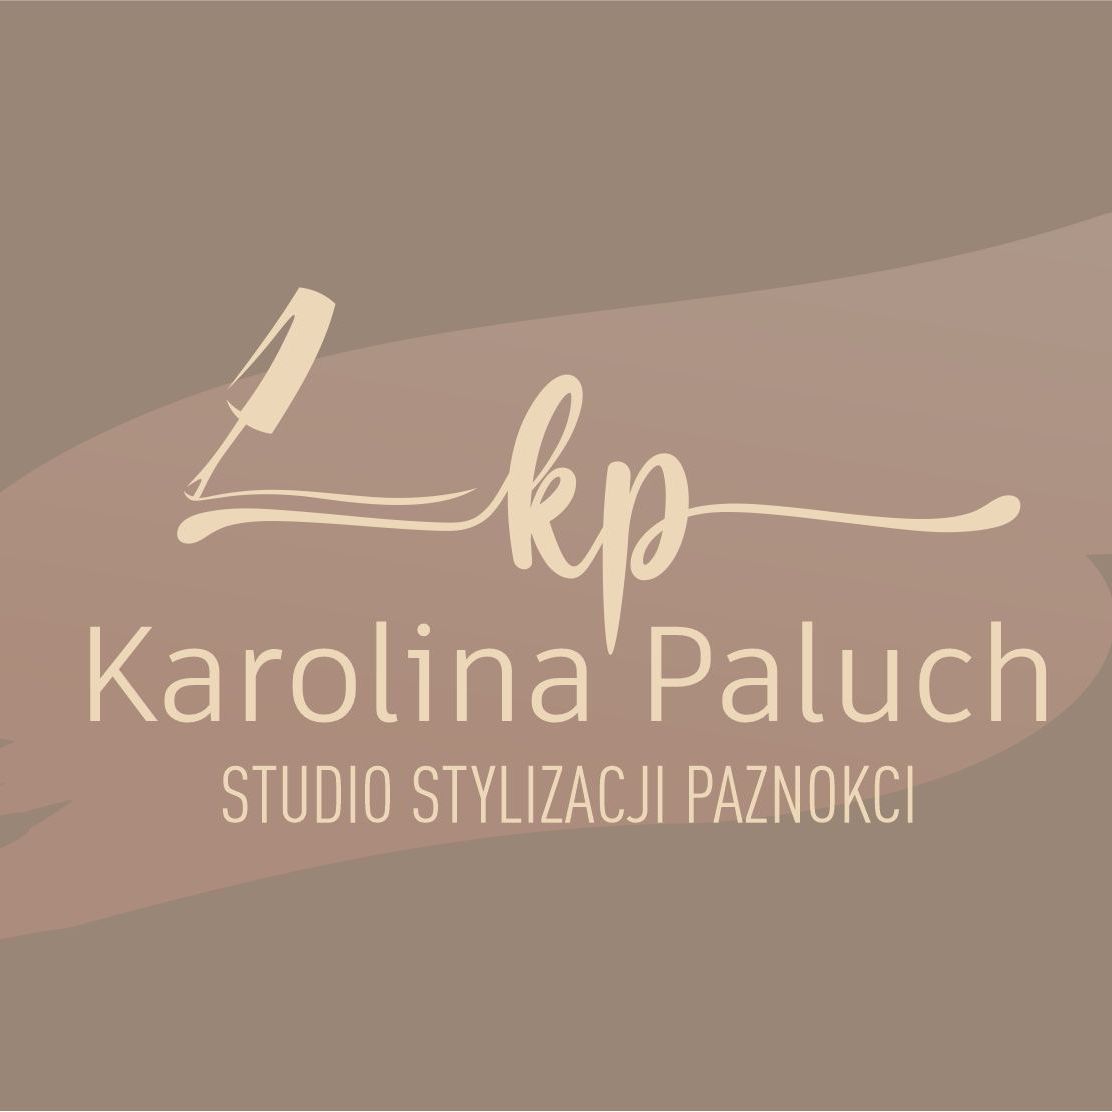 Karolina Paluch STUDIO STYLIZACJI PAZNOKCI, Wieluńska 17B, 98-270, Złoczew